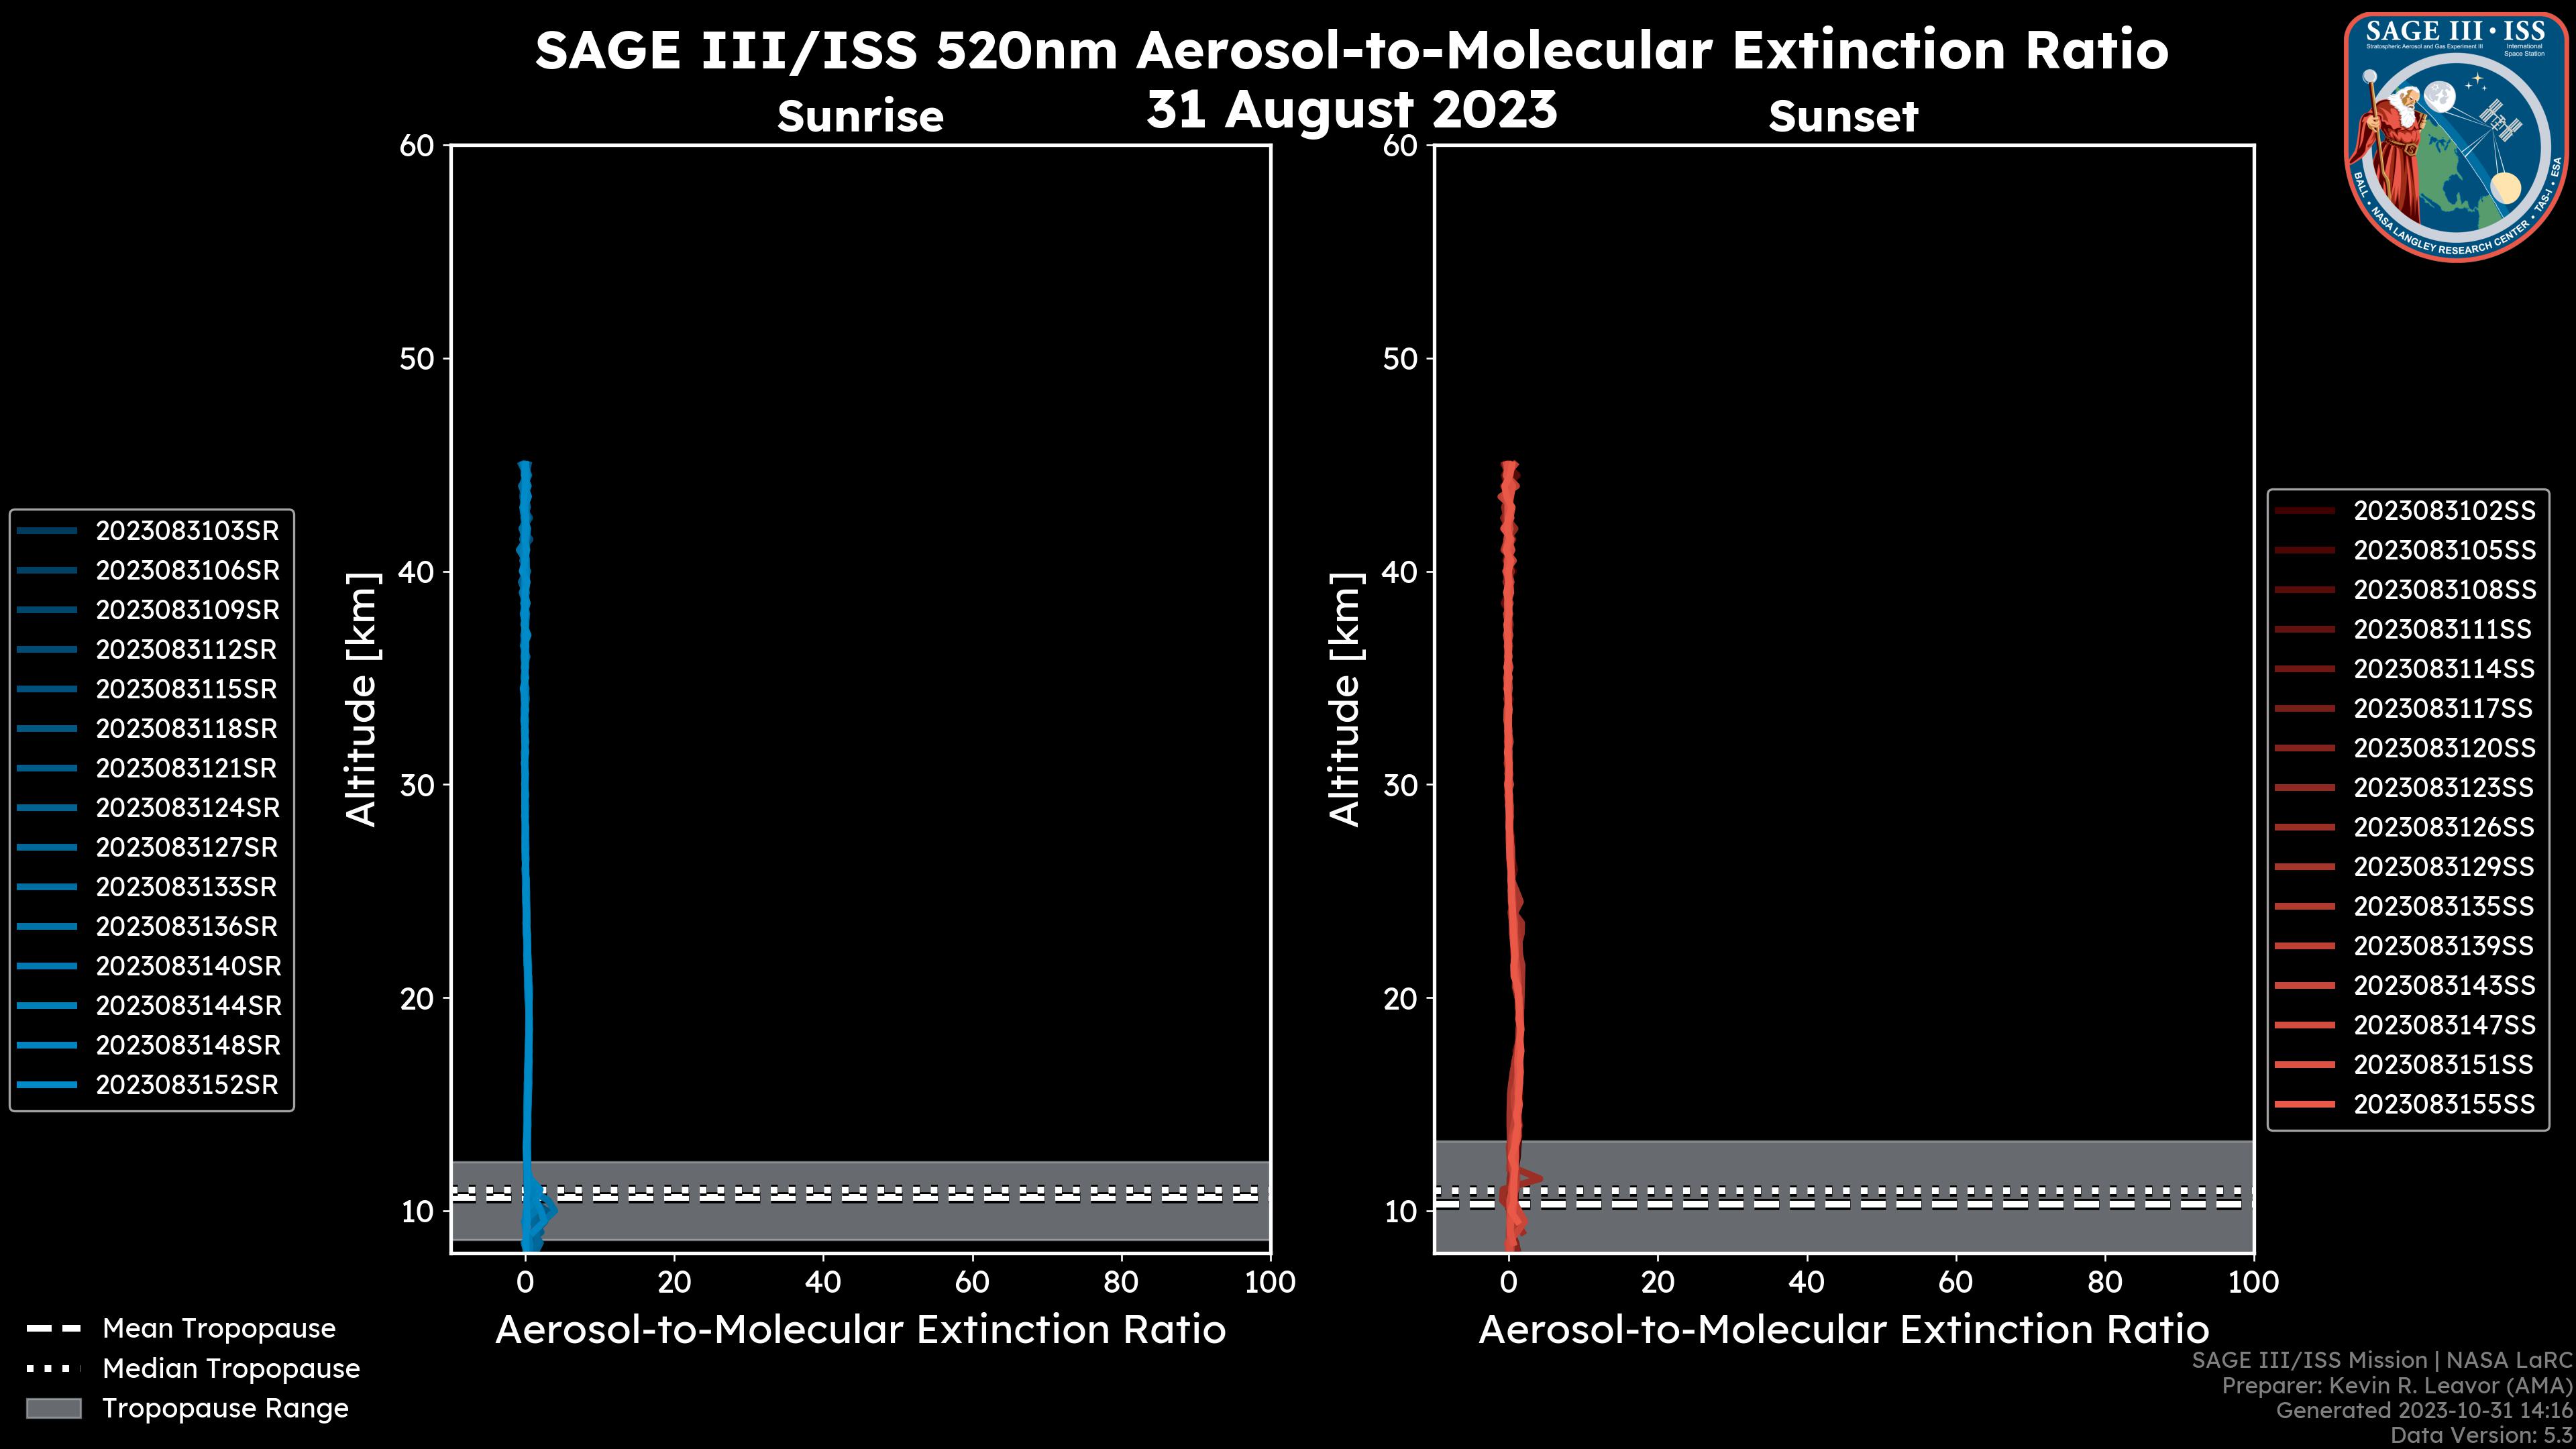 520nm Aerosol-to-Molecular Extinction Ratio